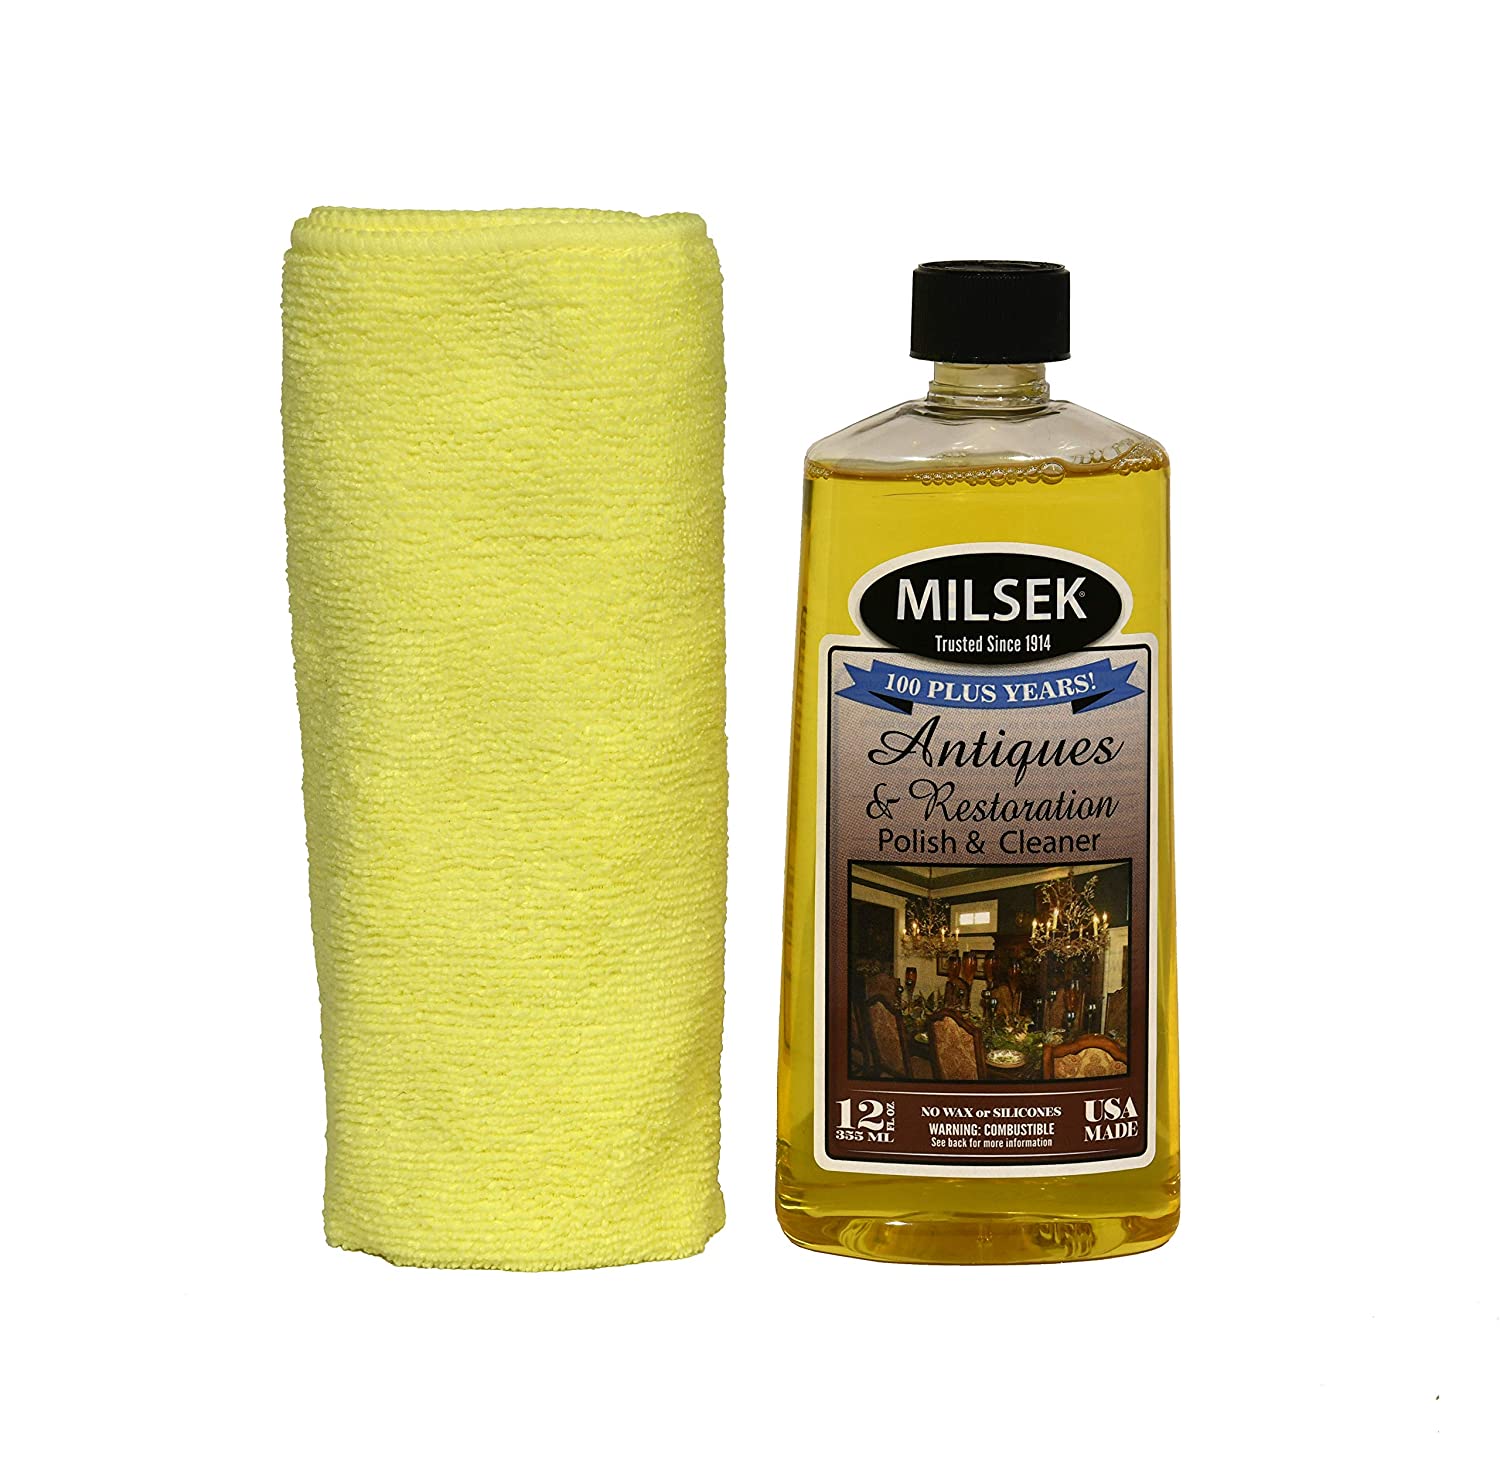 Milsek Furniture Polish & Multi-Purpose Cleaner, Original Lemon Oil - 12 fl oz